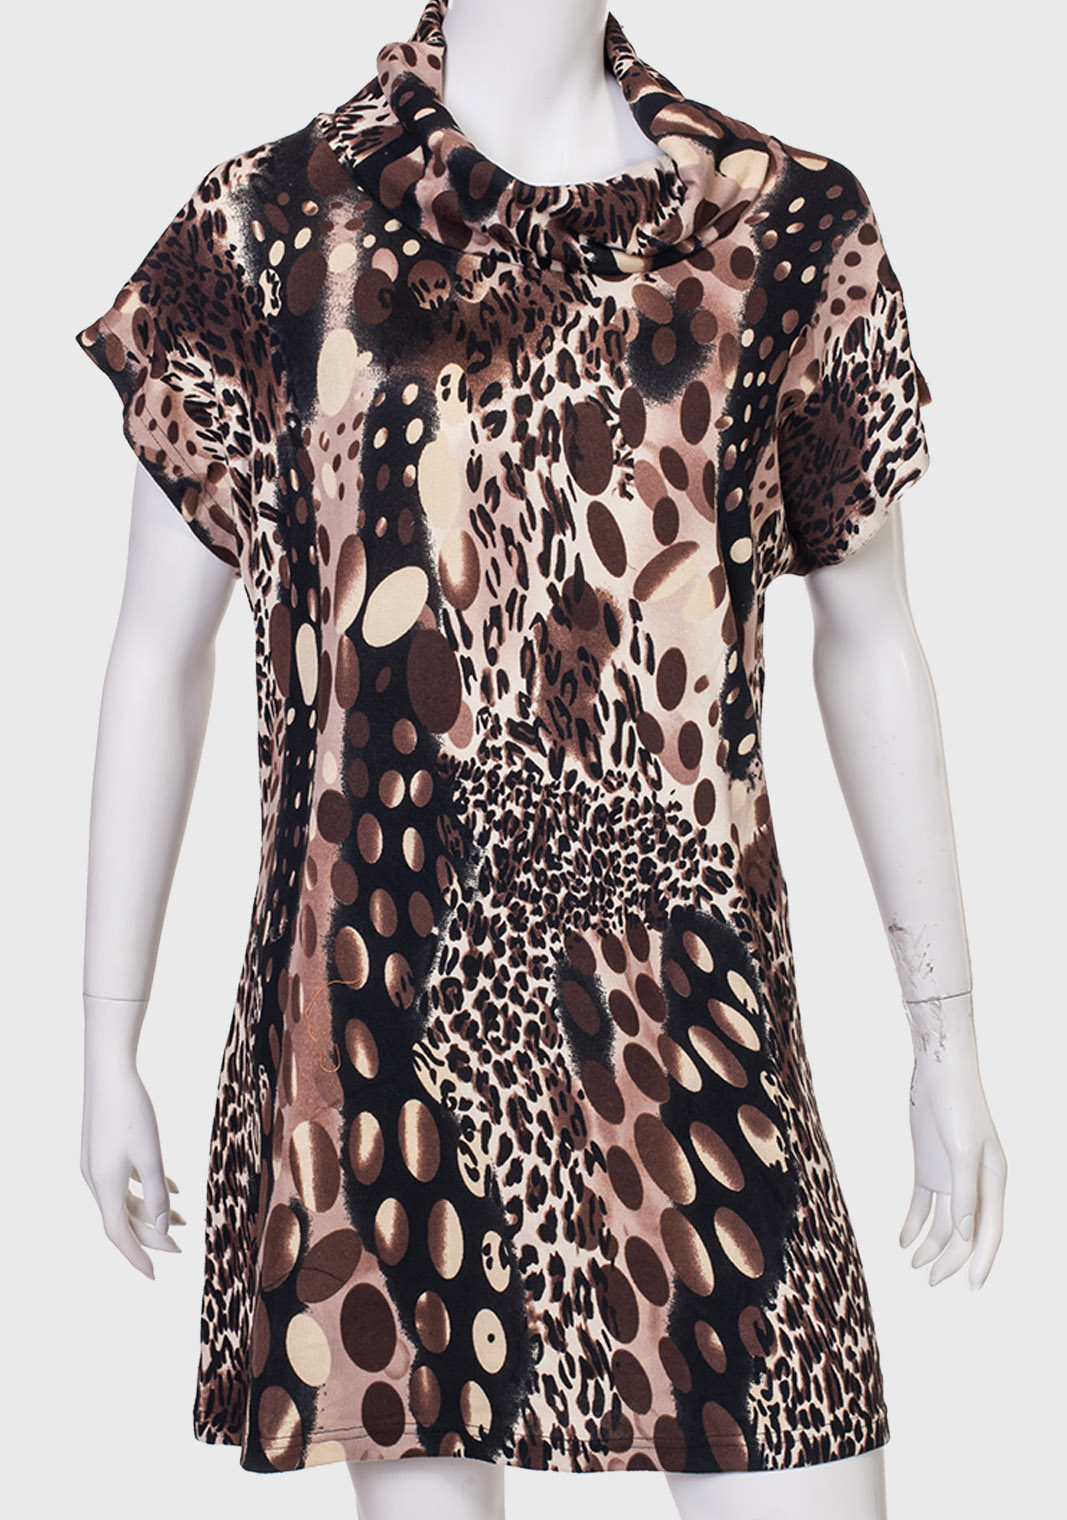 Трендовое платье с леопардовым принтом от MINKAS - купить выгодно